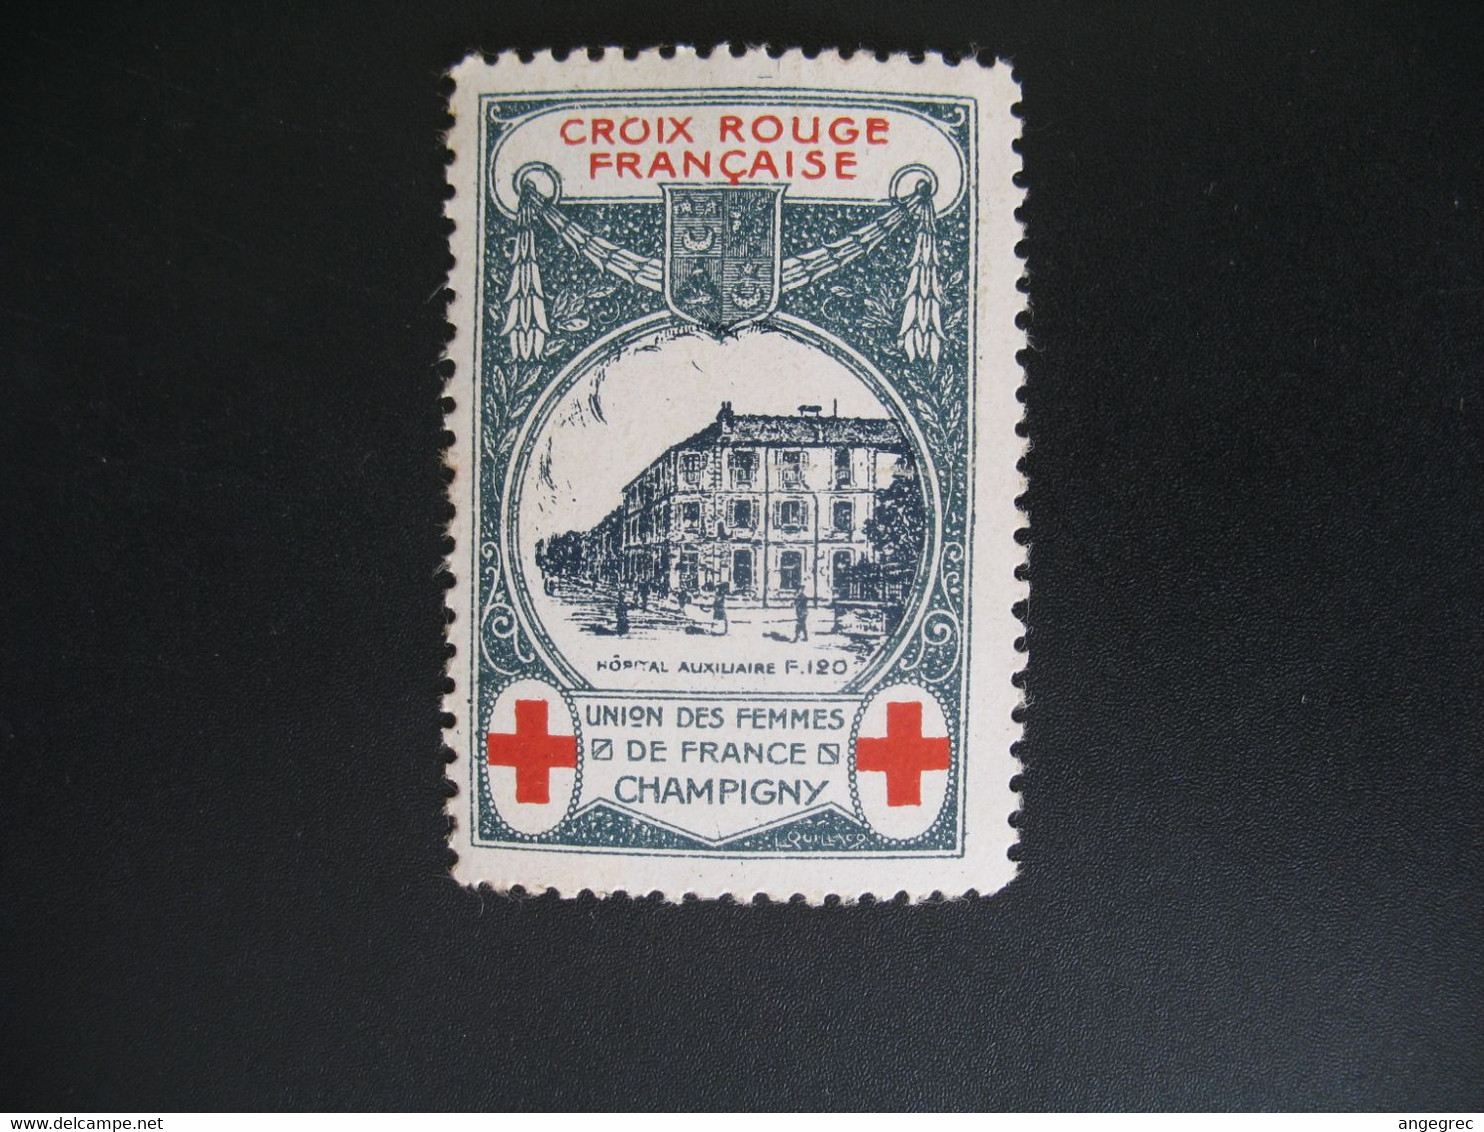 Vignette Militaire Delandre Guerre De 1914 - Croix Rouge - Red Cross -   Neuf ** Champigny Union Des Femmes  De France - Red Cross